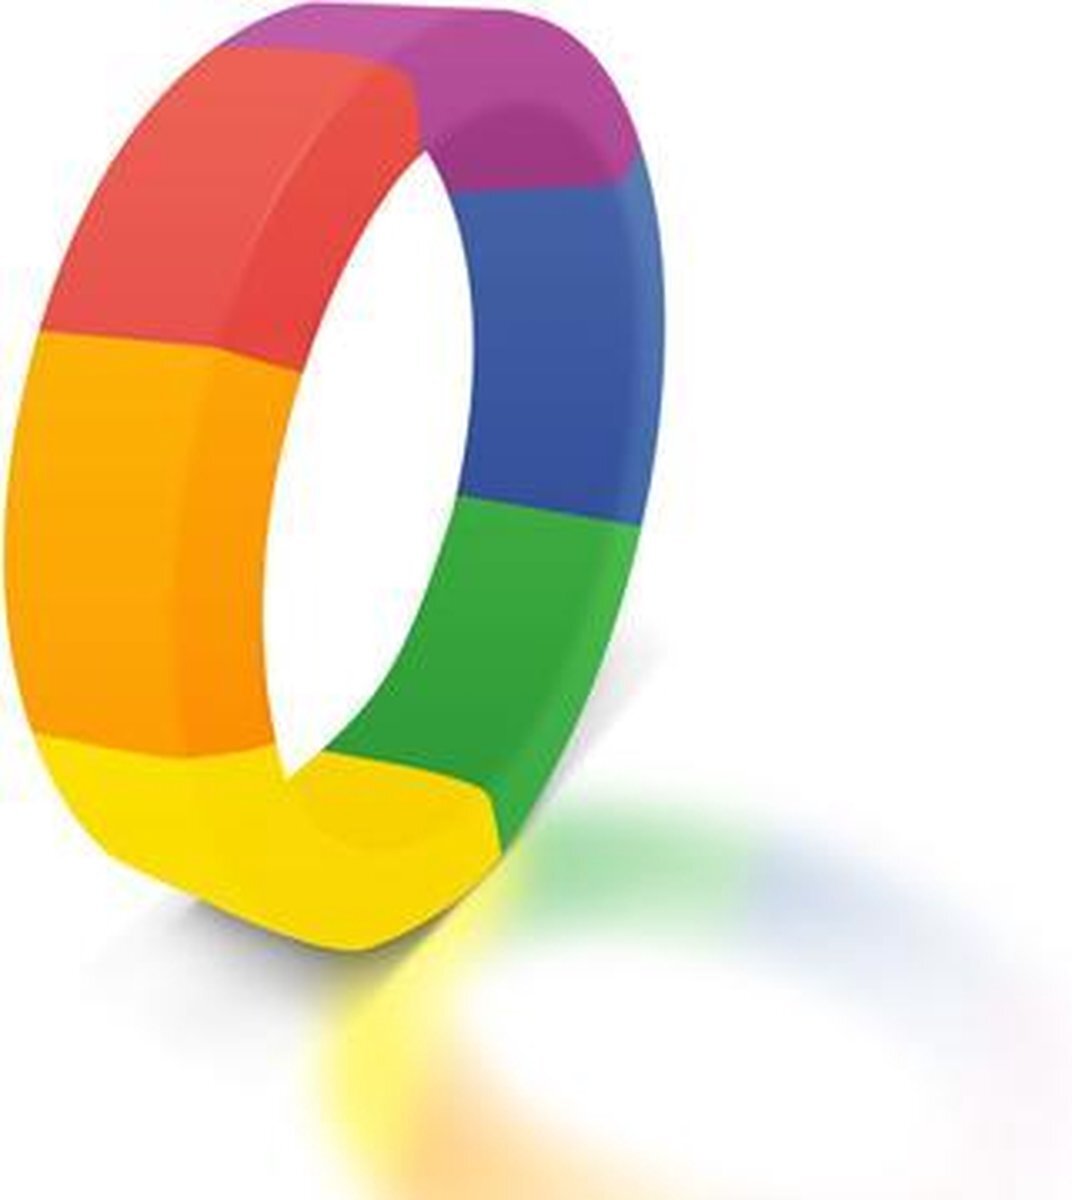 Topco Sales The Brawn Pride Cockring - Rainbow